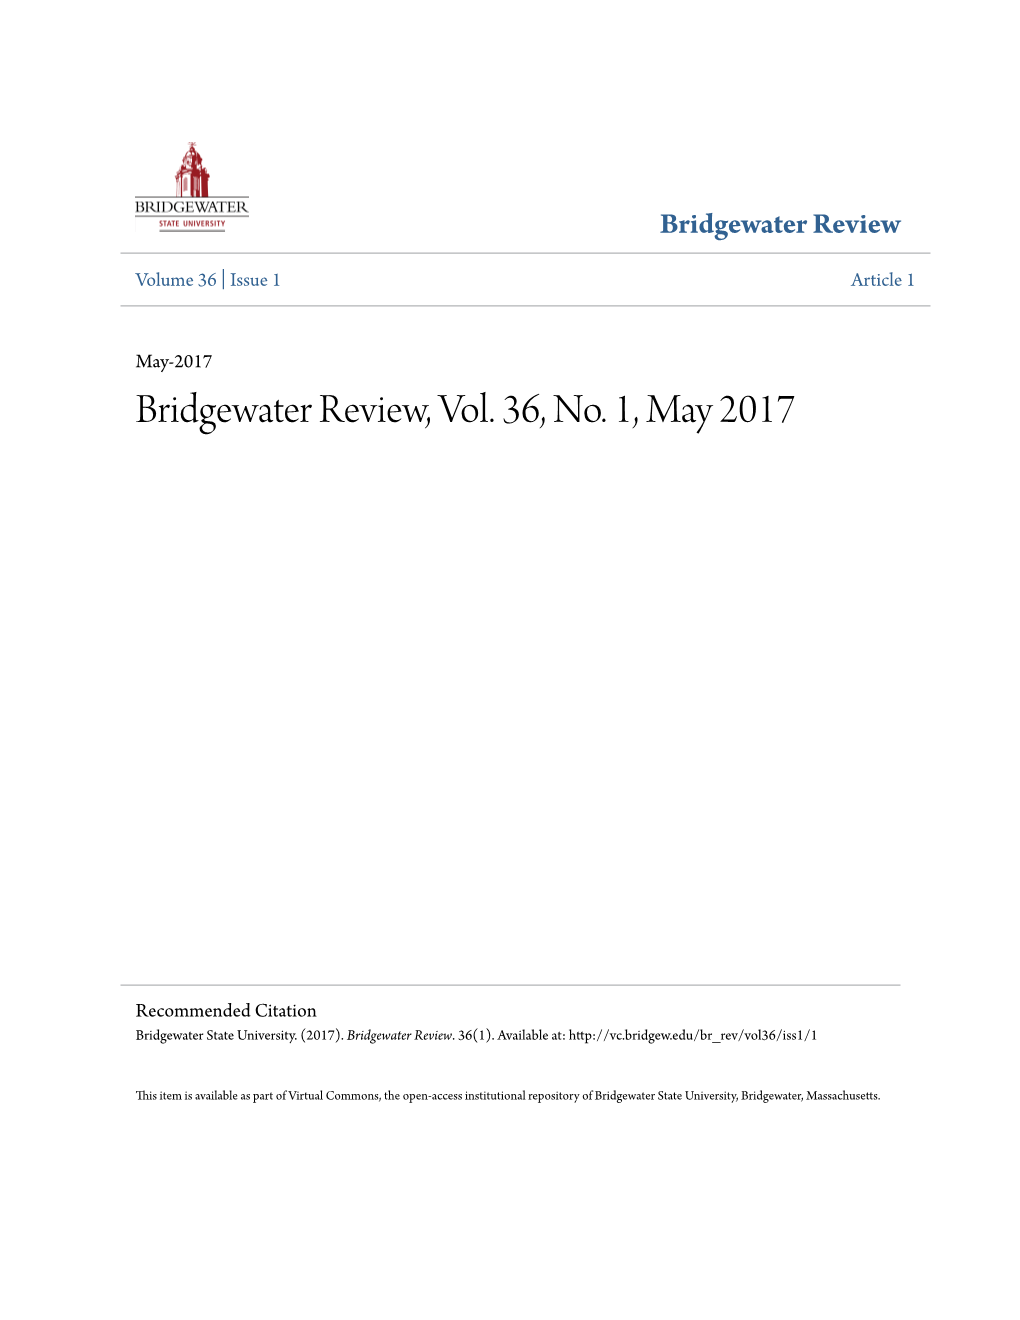 Bridgewater Review, Vol. 36, No. 1, May 2017